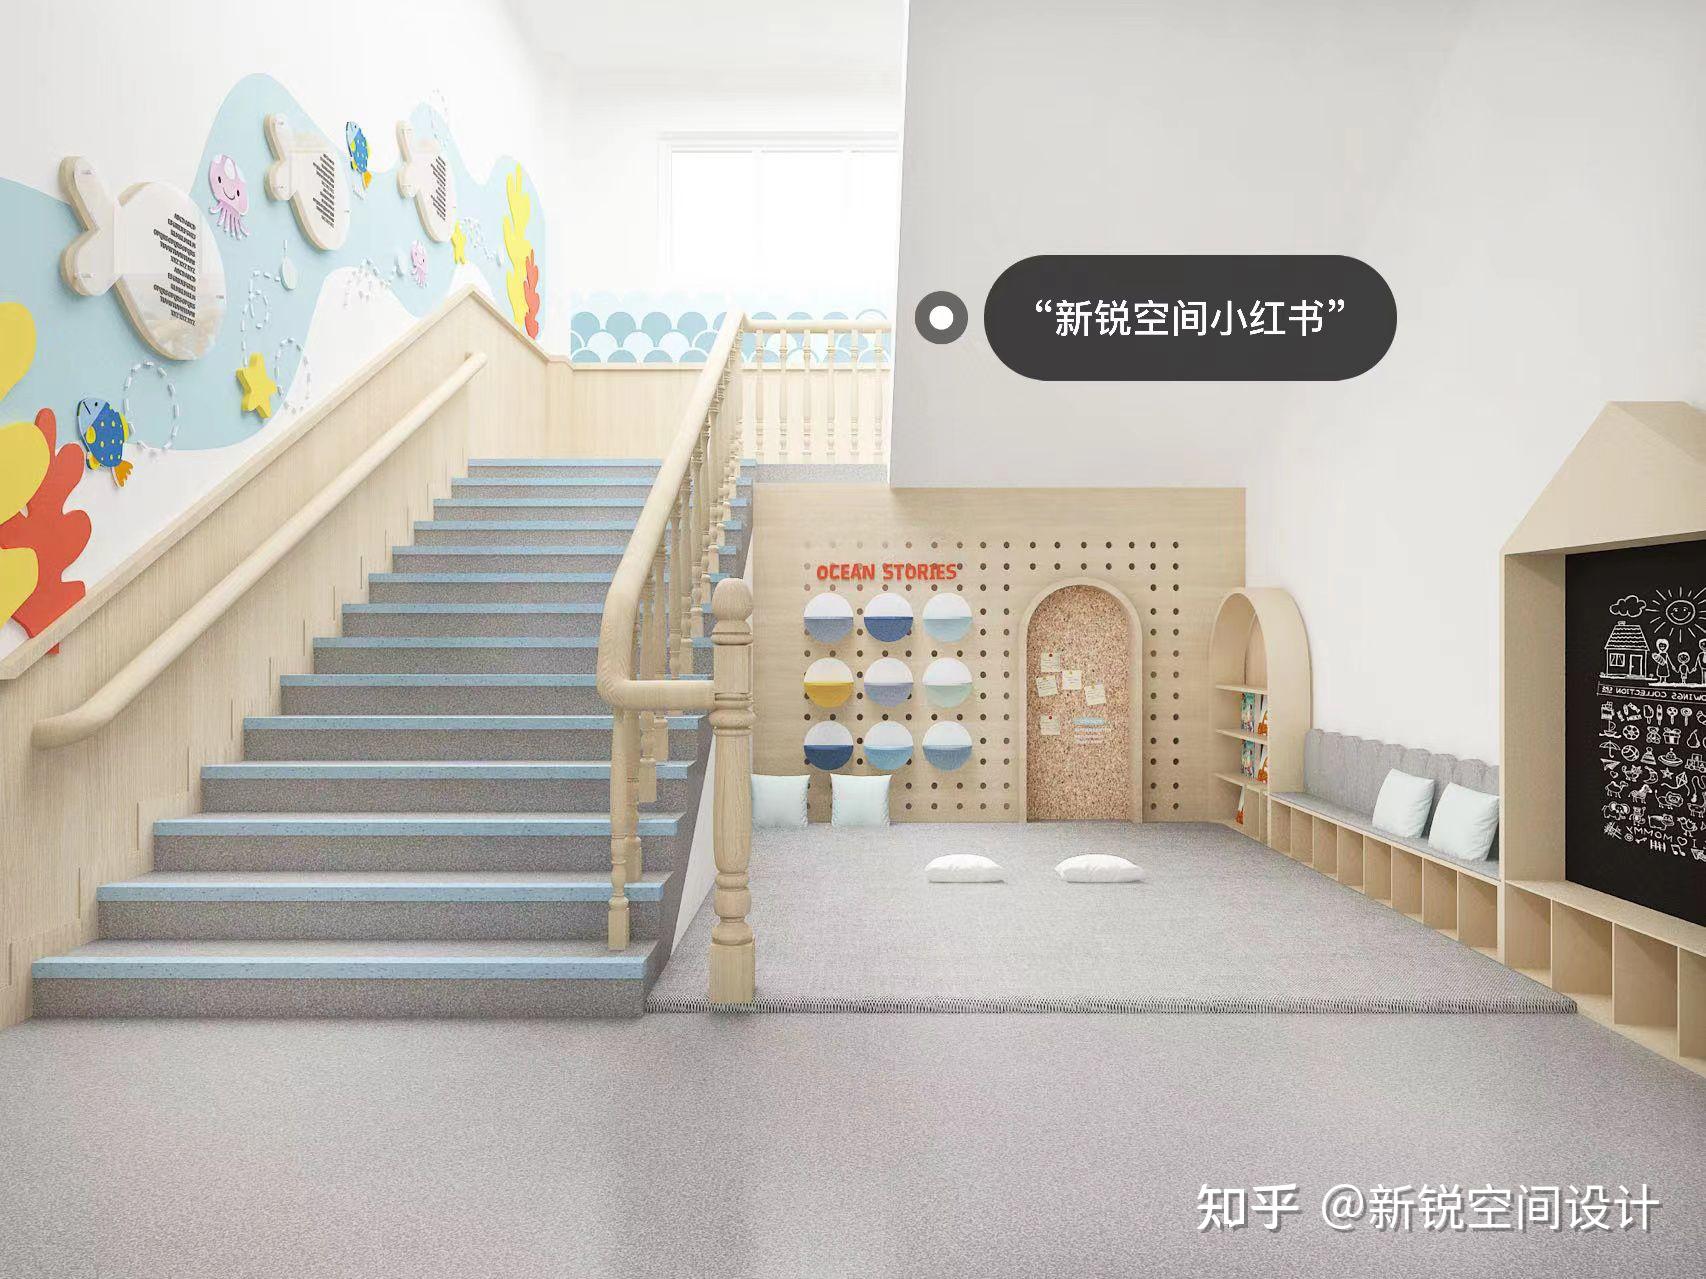 EZ 幼儿园，阶梯空间搭建趣味游戏场所 / 日比野设计 + Kids Design Labo | 建筑学院